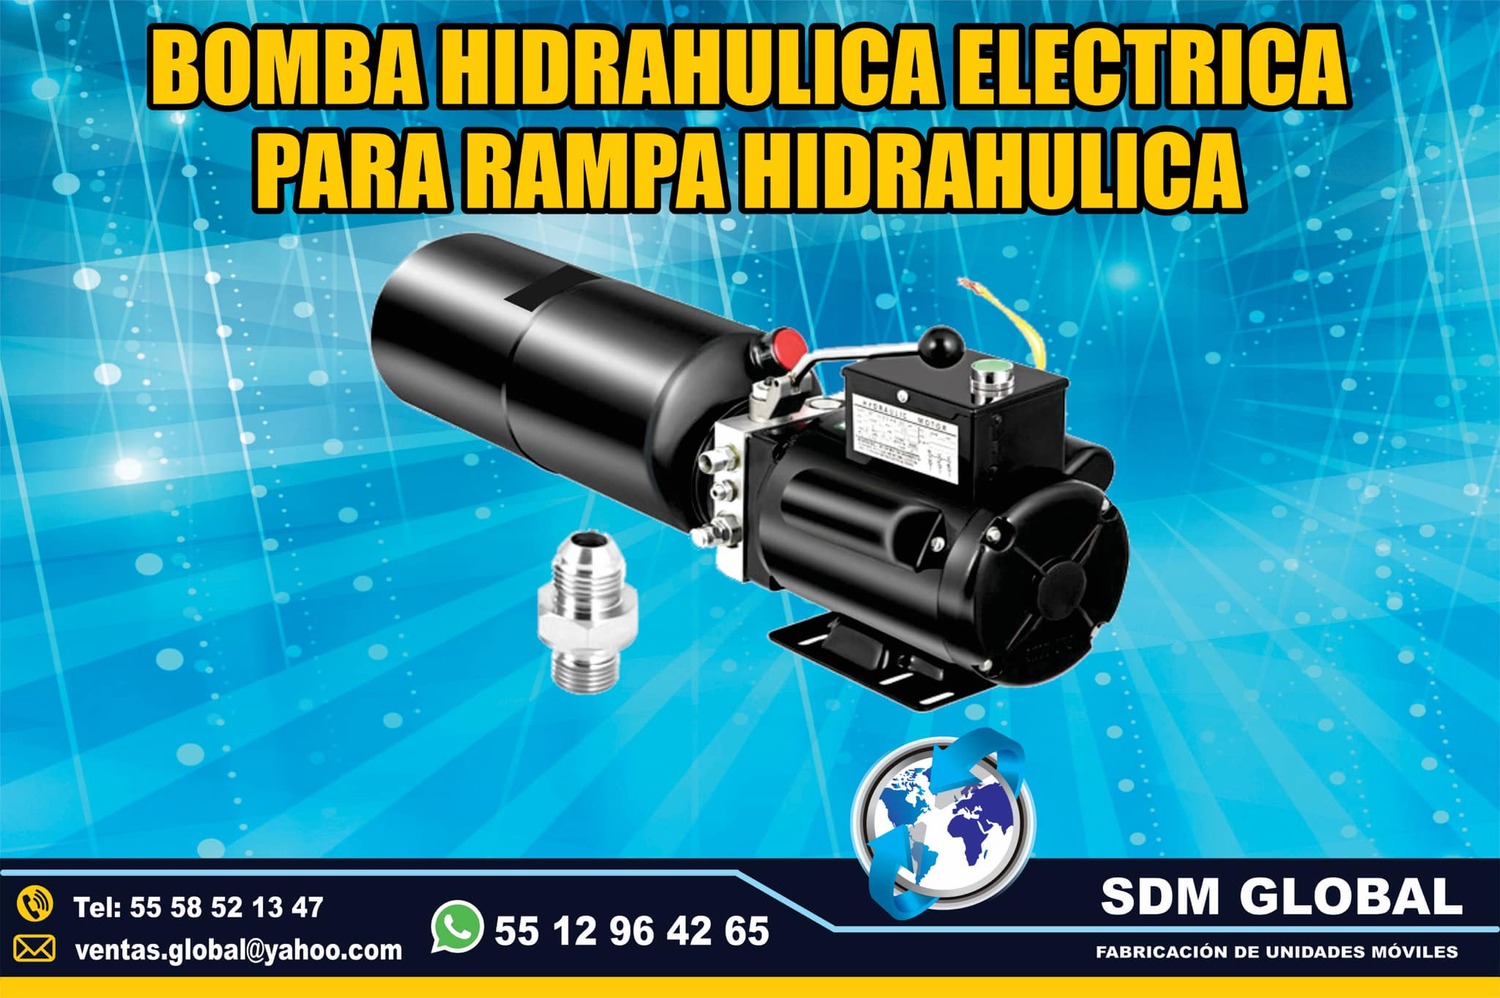 Vente de Bomba electrica para Rampas Hidrahulicas<br>